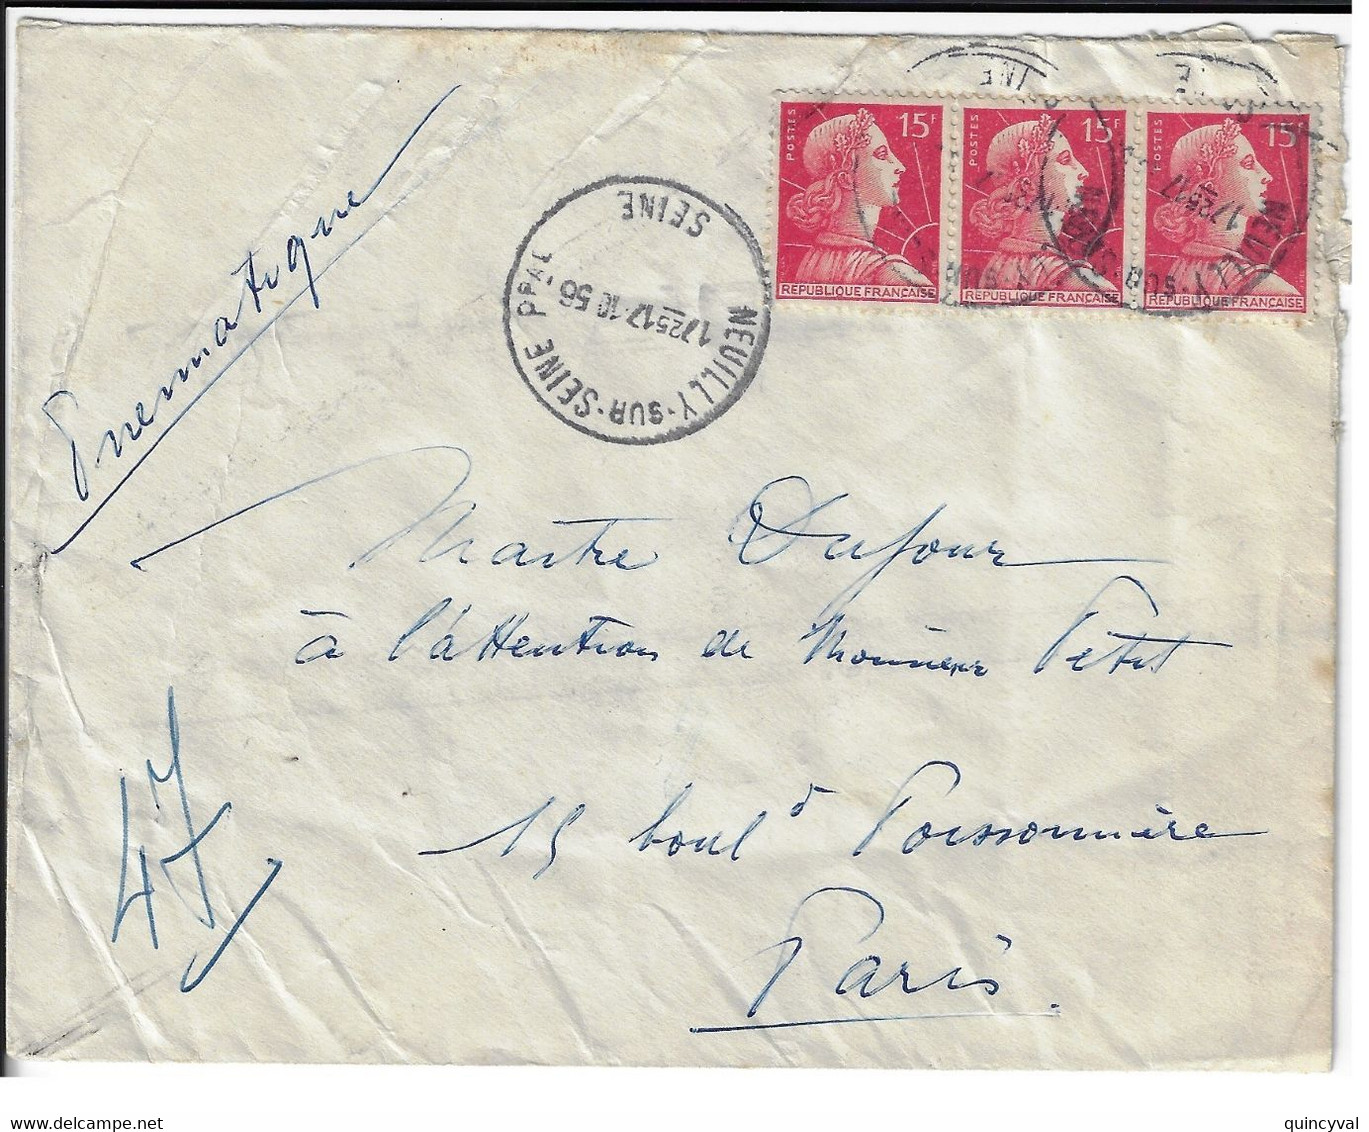 NEUILLY Sur SEINE Enveloppe Pneumatique 15 F Muller Rouge Yv 1011 Dest Paris 47 Via Paris Bourse PN Ob 17 10 1956 - Covers & Documents